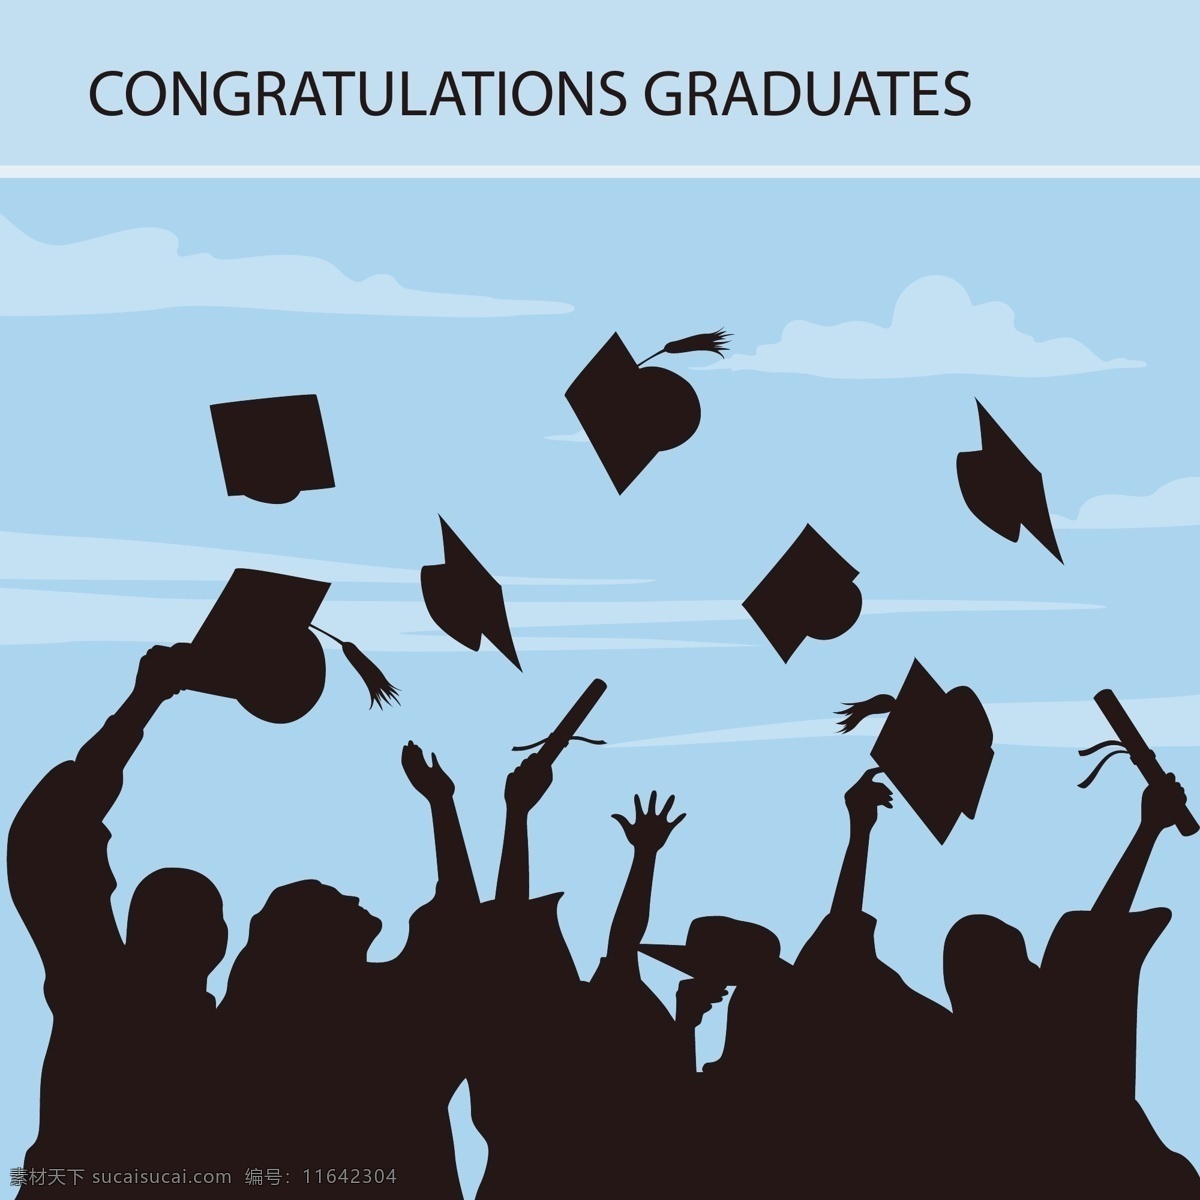 毕业 典礼 海报 设计素材 学生 黑白 蓝天 矢量素材 学士帽 平面素材